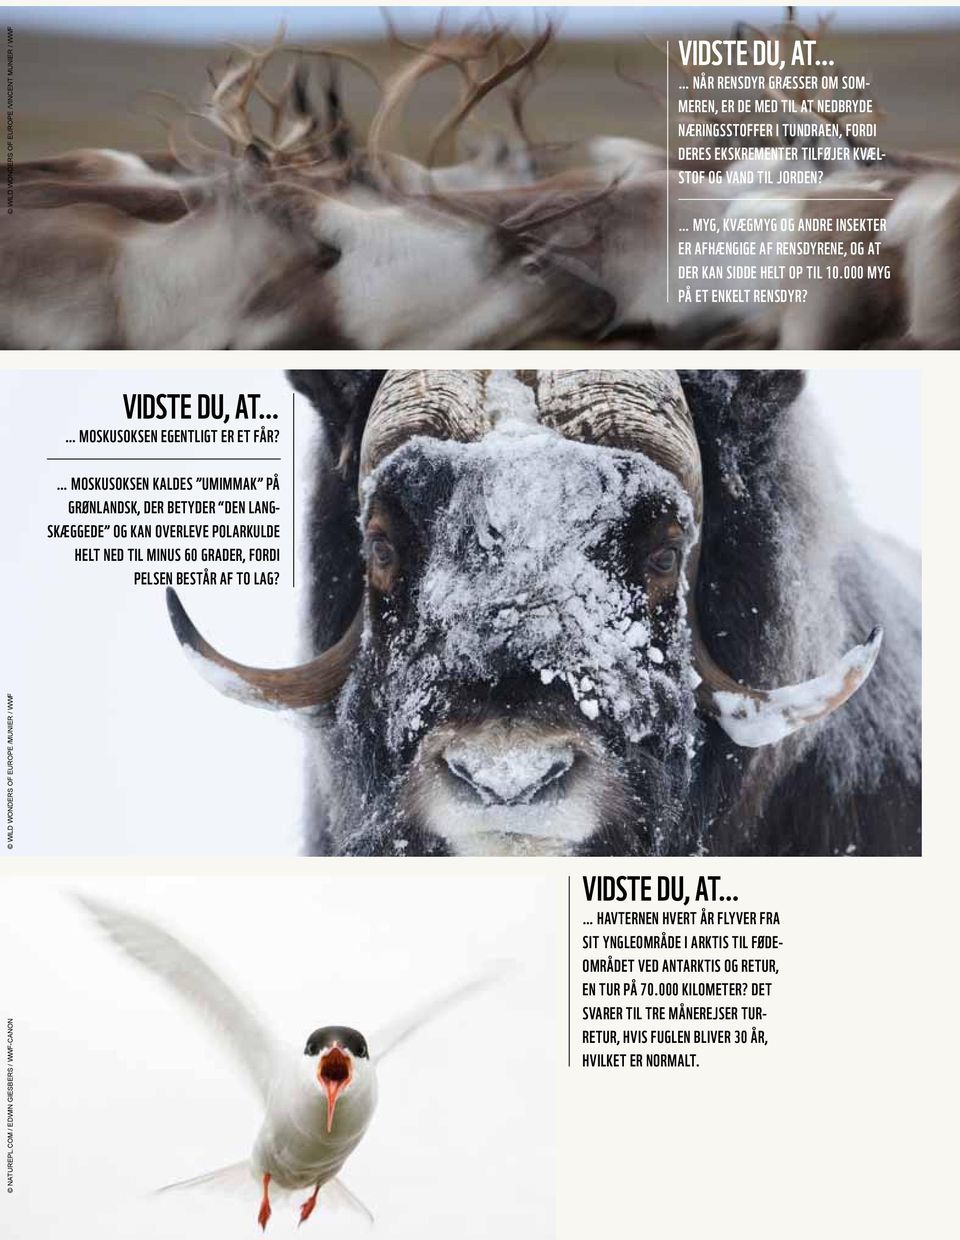 moskusoksen kaldes umimmak på grønlandsk, der betyder den langskæggede og kan overleve polarkulde helt ned til minus 60 grader, fordi pelsen består af to lag? naturepl.